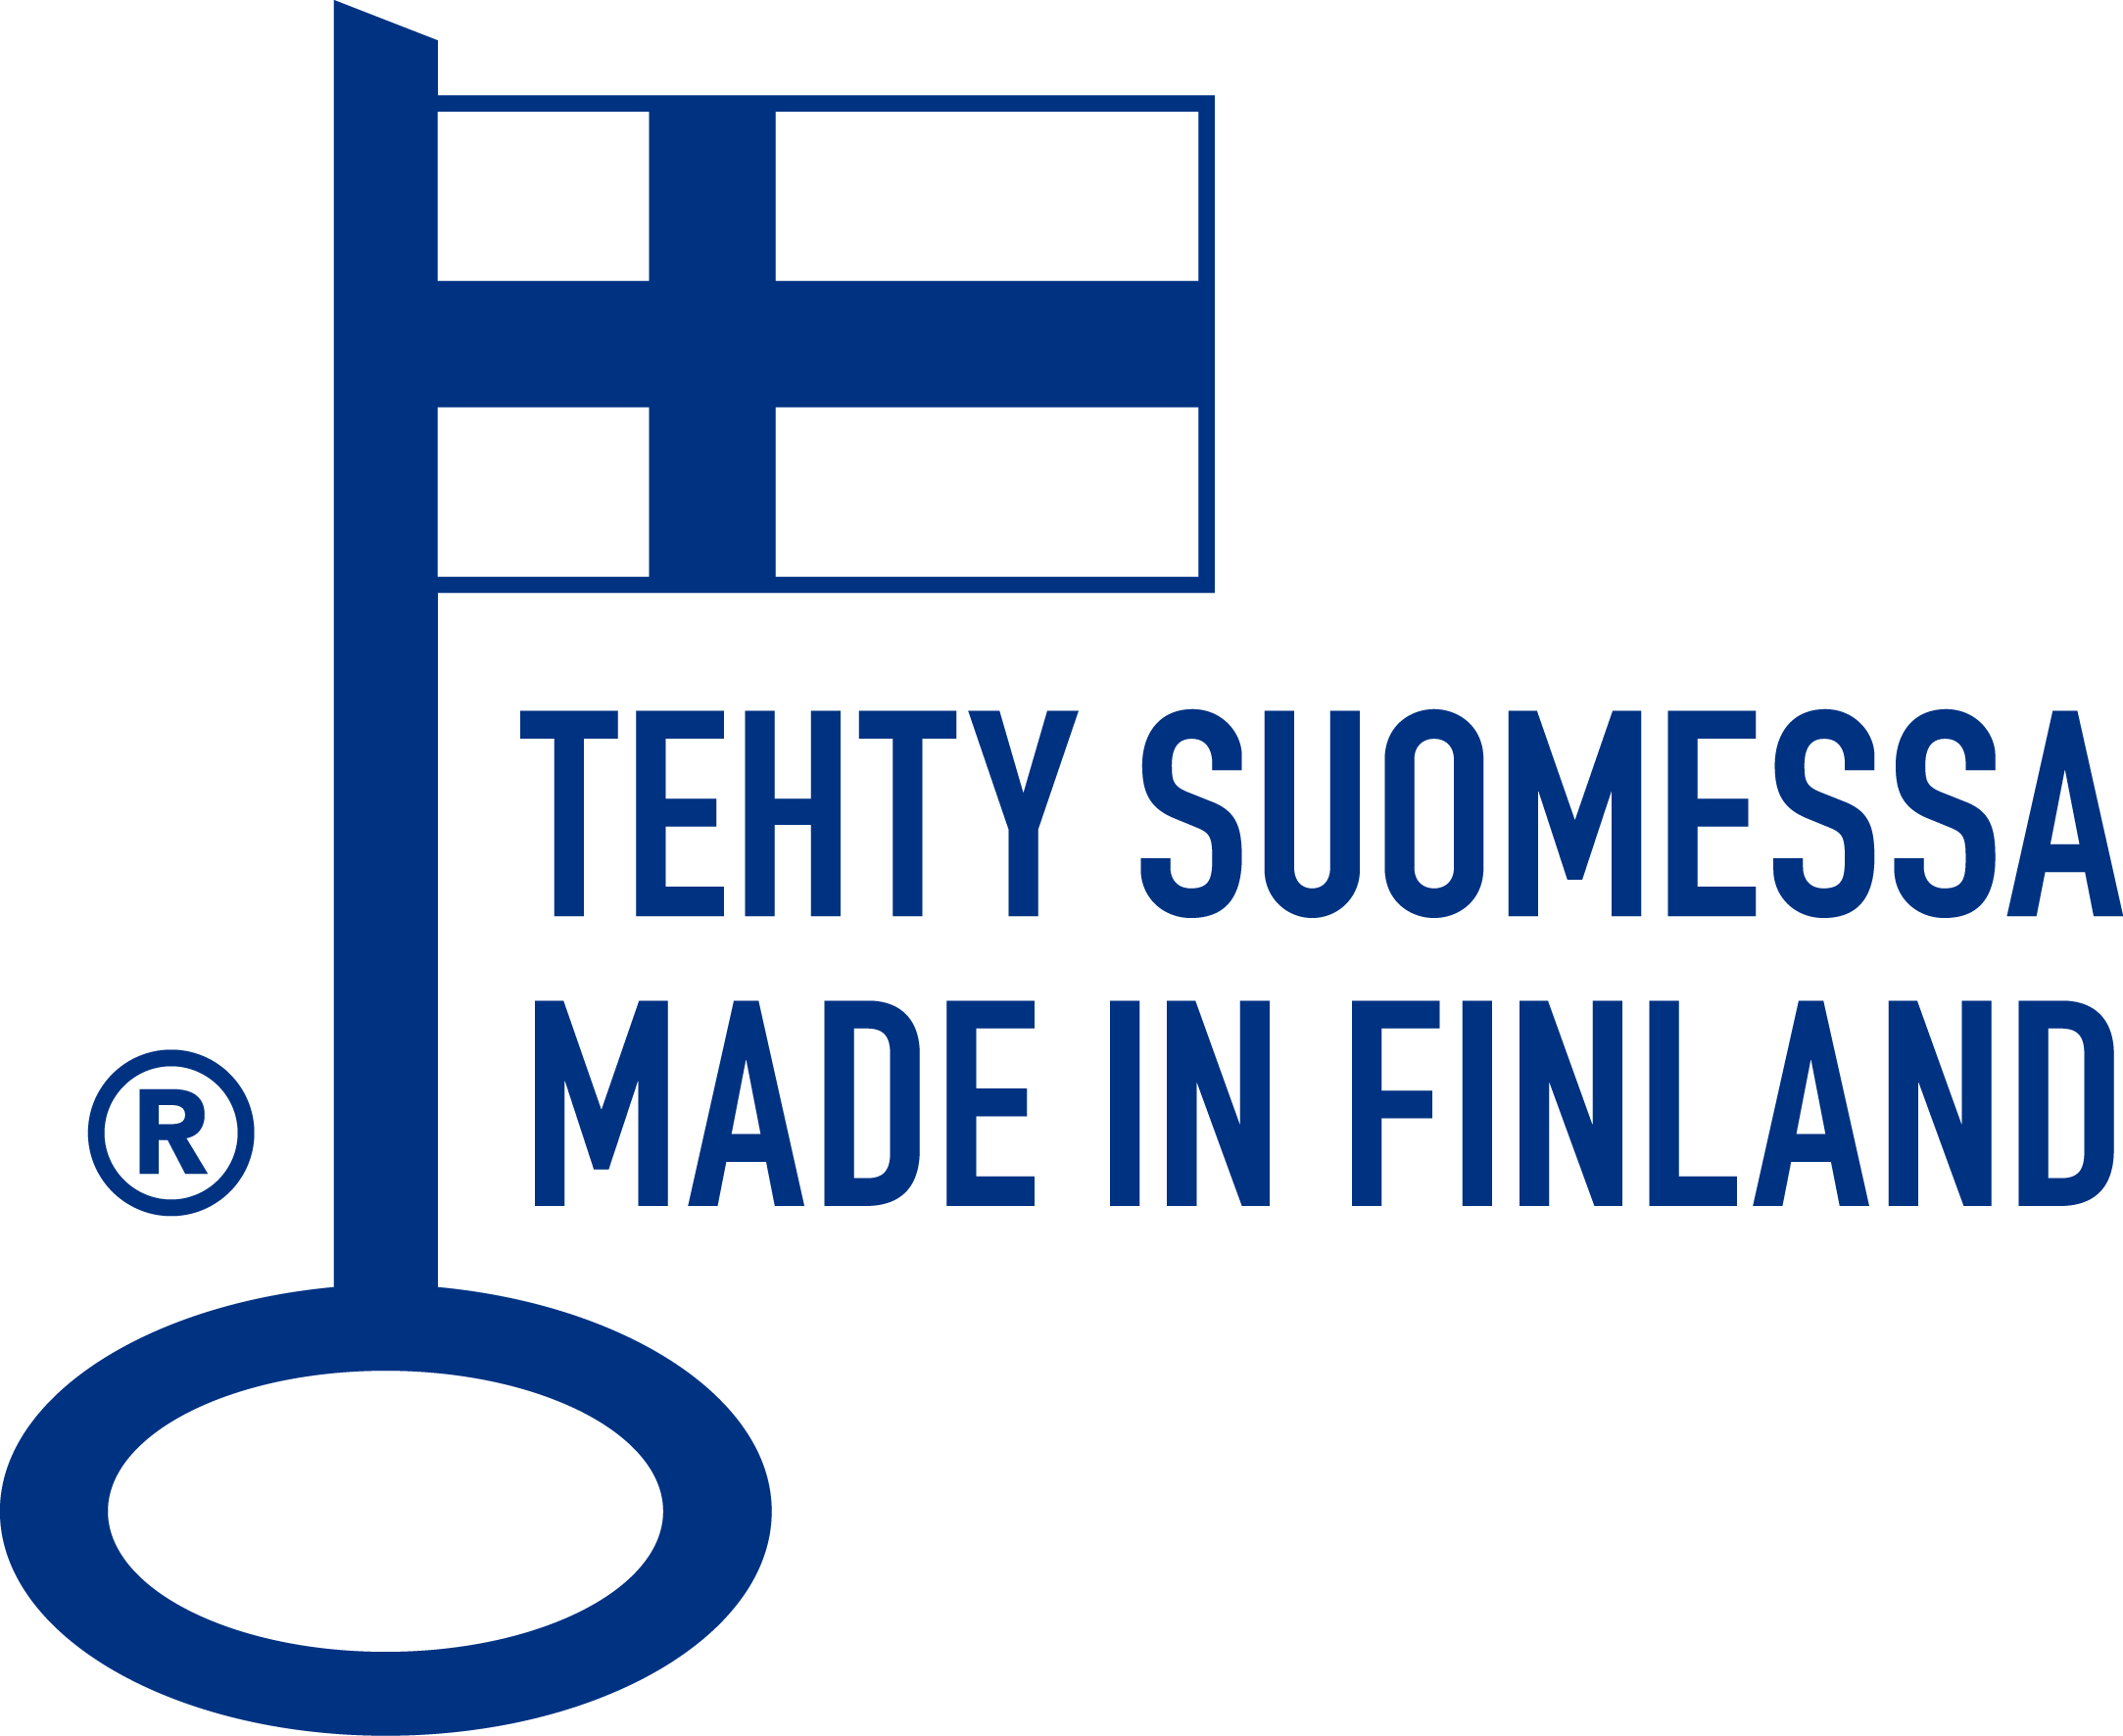 Avainlippu - Tehty Suomessa - Made in Finland